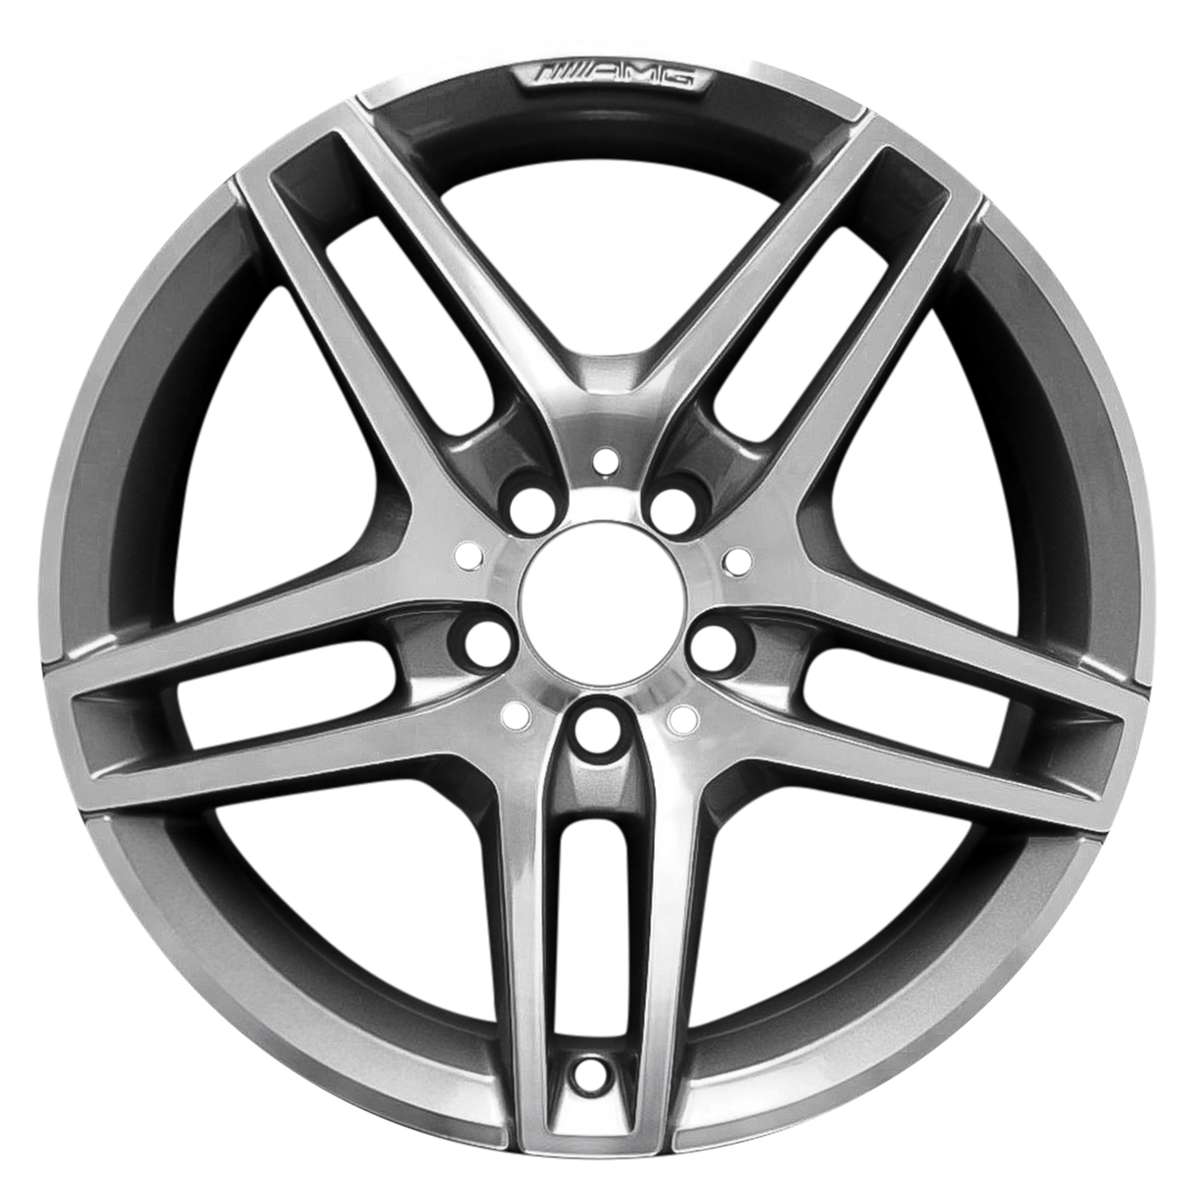 2014 Mercedes E350 18" OEM AMG Rear Wheel Rim W85398MC